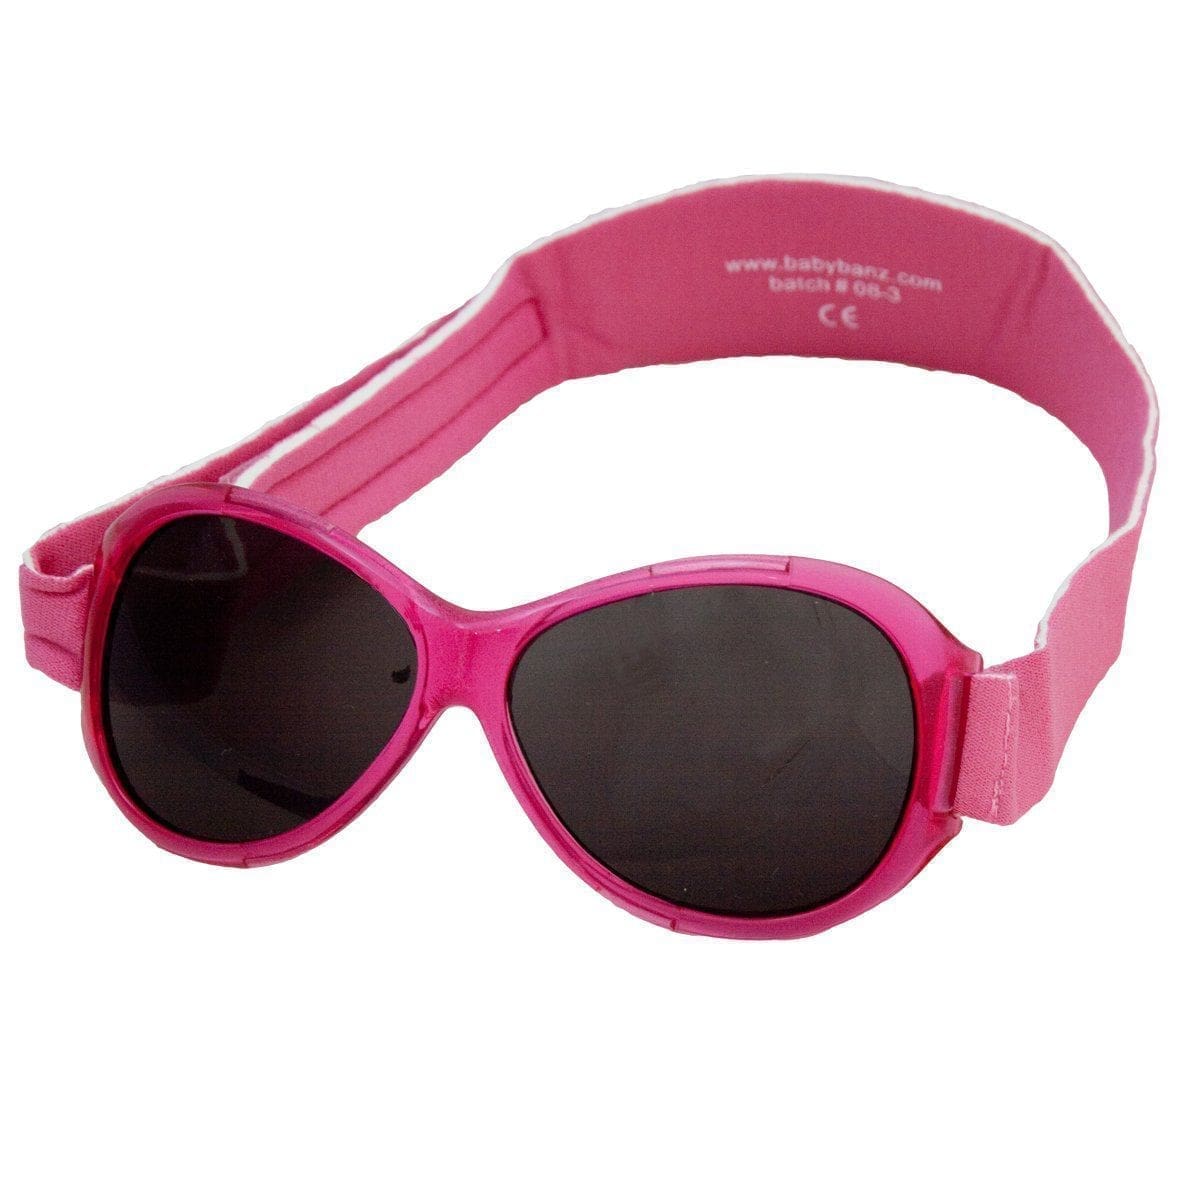 BANZ Sunglasses Baby Sunglasses - Retro Wrap Around